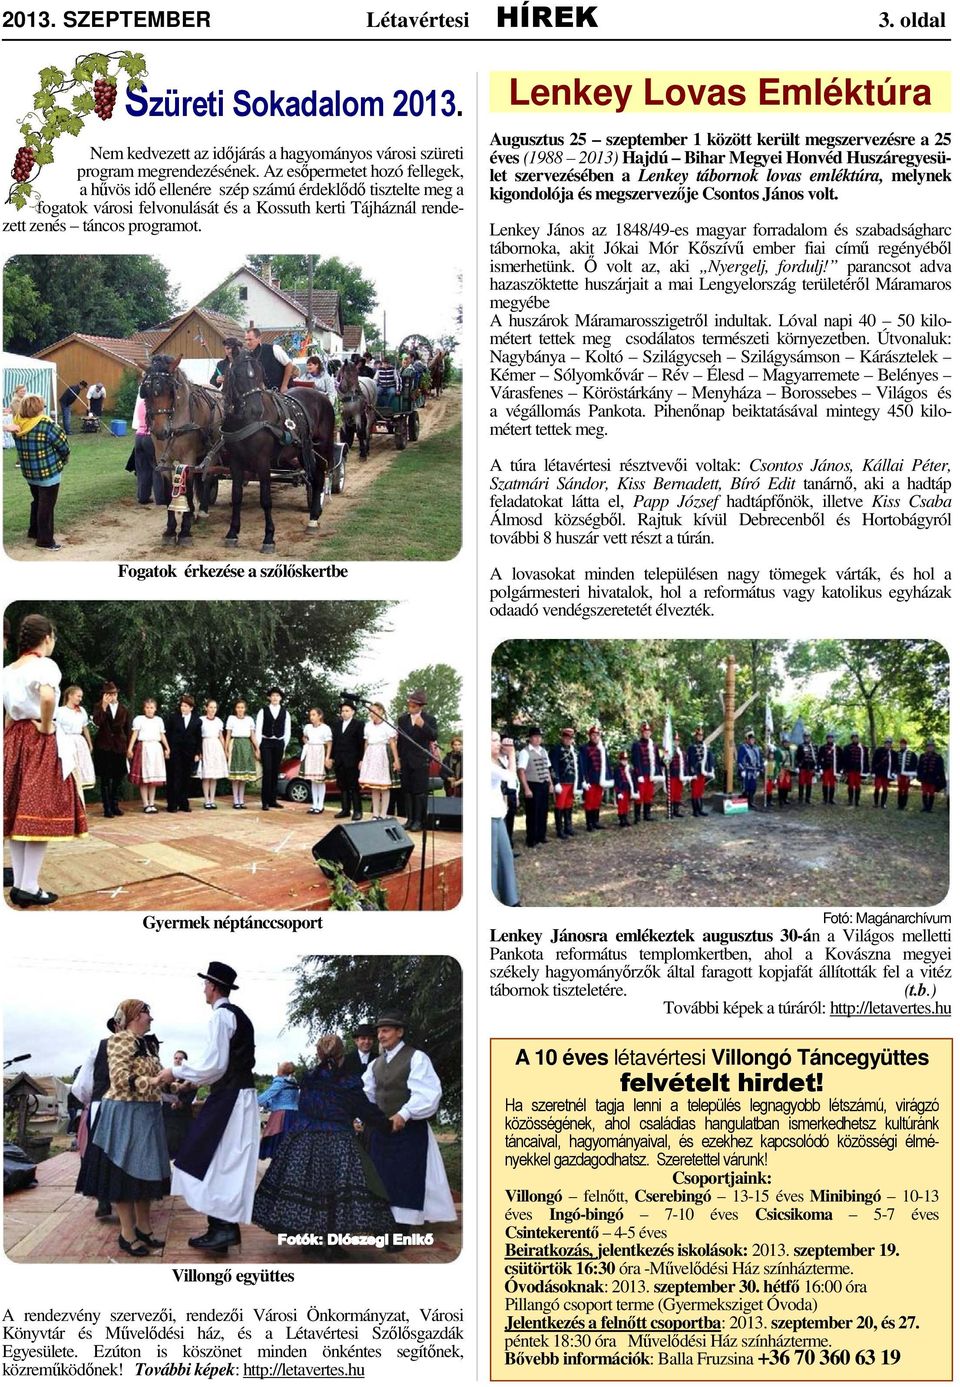 Lenkey Lovas Emléktúra Augusztus 25 szeptember 1 között került megszervezésre a 25 éves (1988 2013) Hajdú Bihar Megyei Honvéd Huszáregyesület szervezésében a Lenkey tábornok lovas emléktúra, melynek